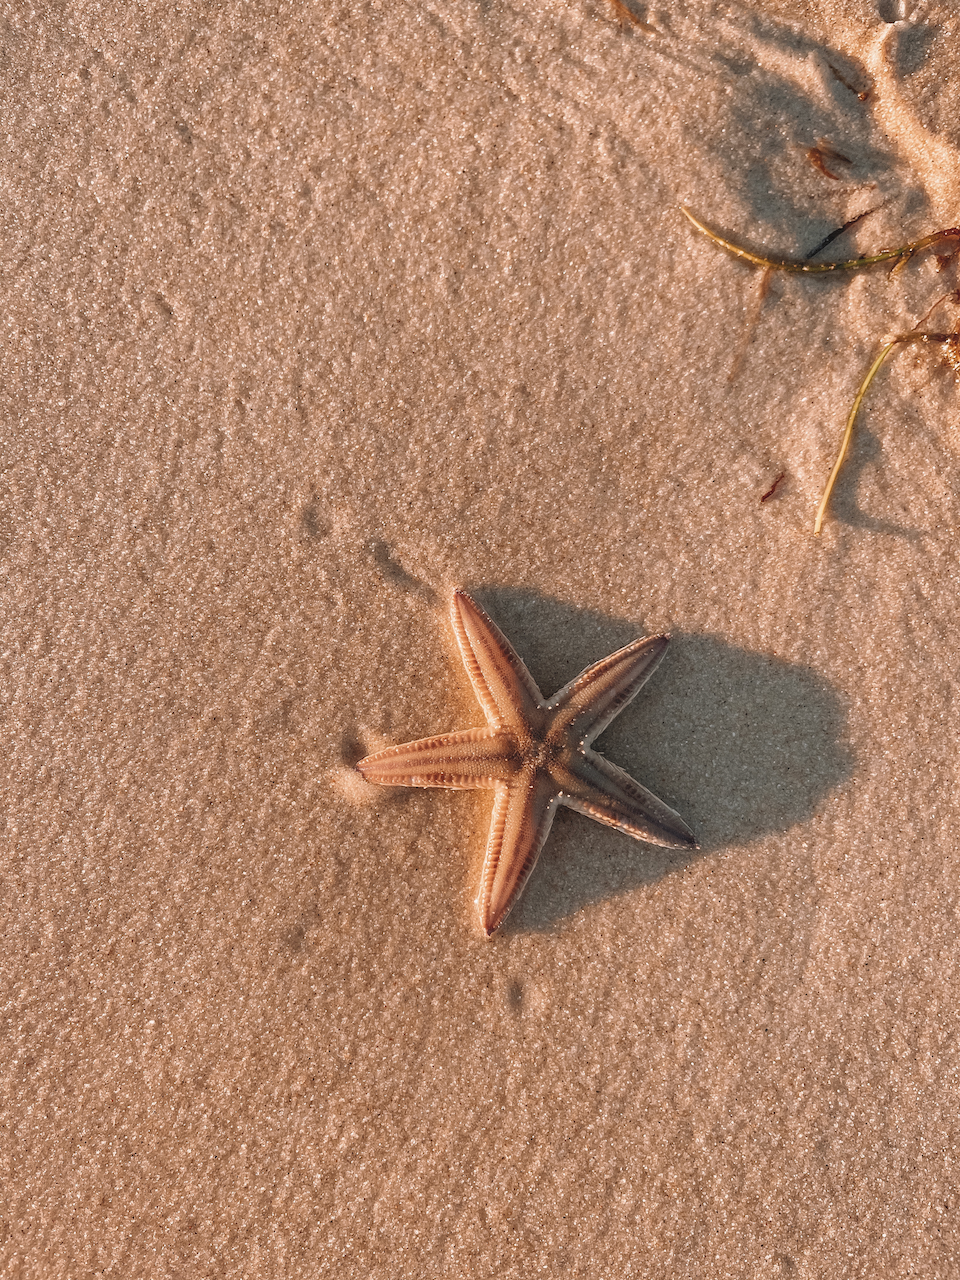 Une étoile de mer - Île de Moreton - Queensland - Australie